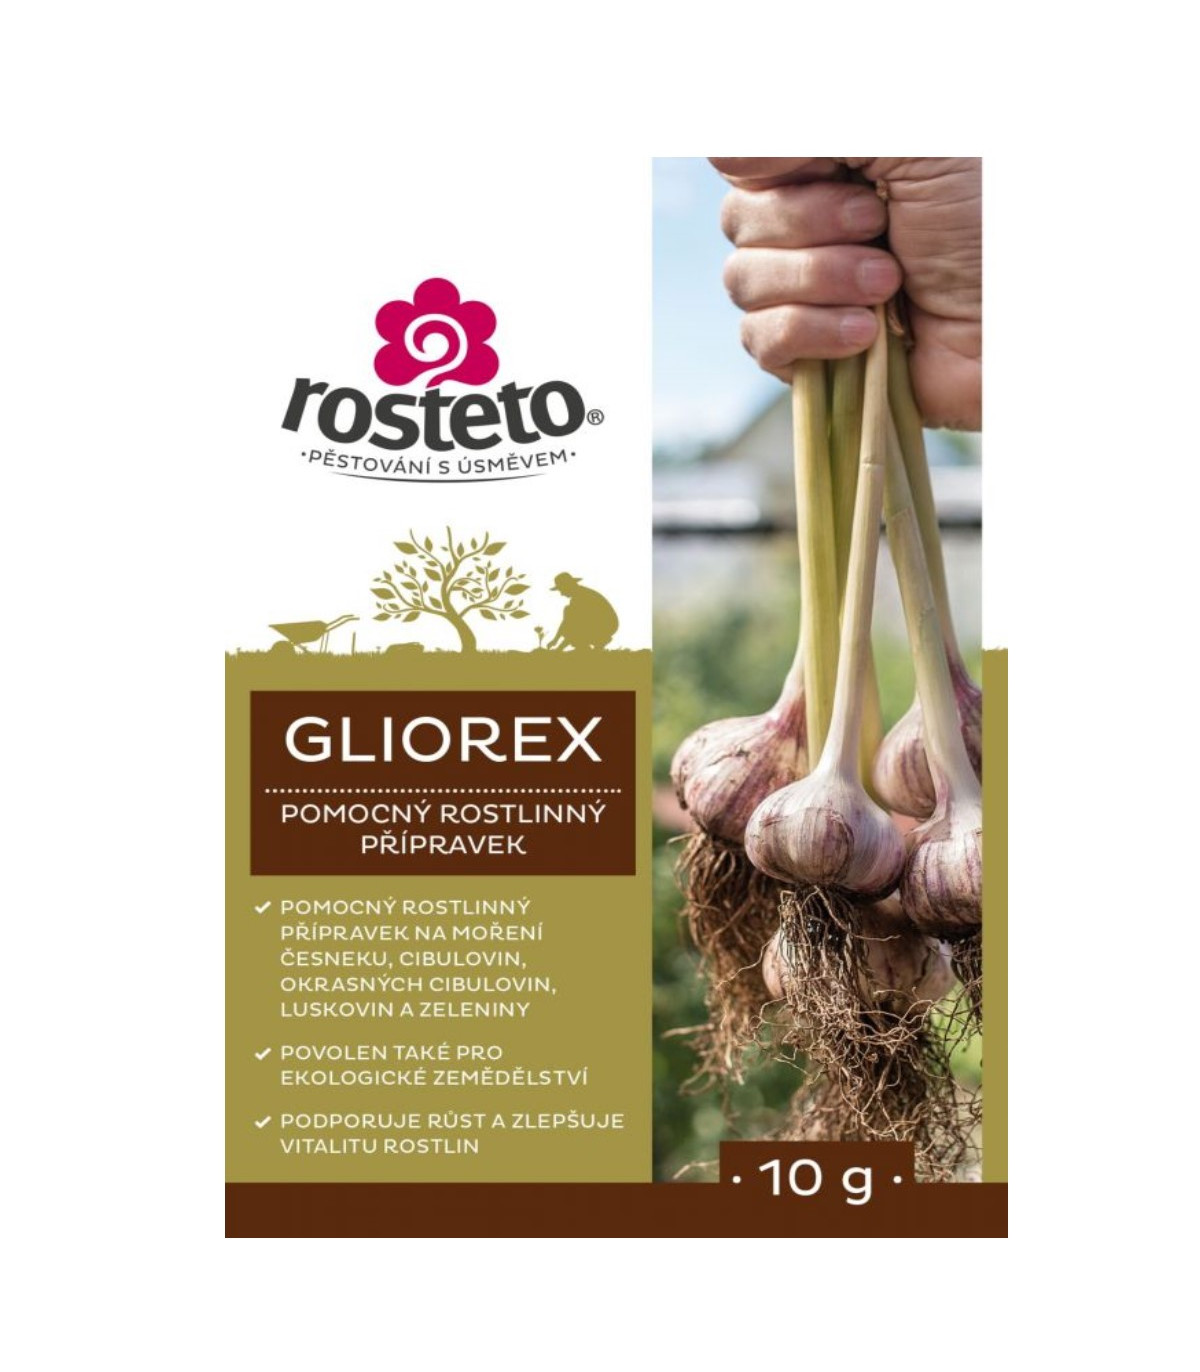 Gliorex - Rosteto - rostlinný pomocný přípravek - 10 g